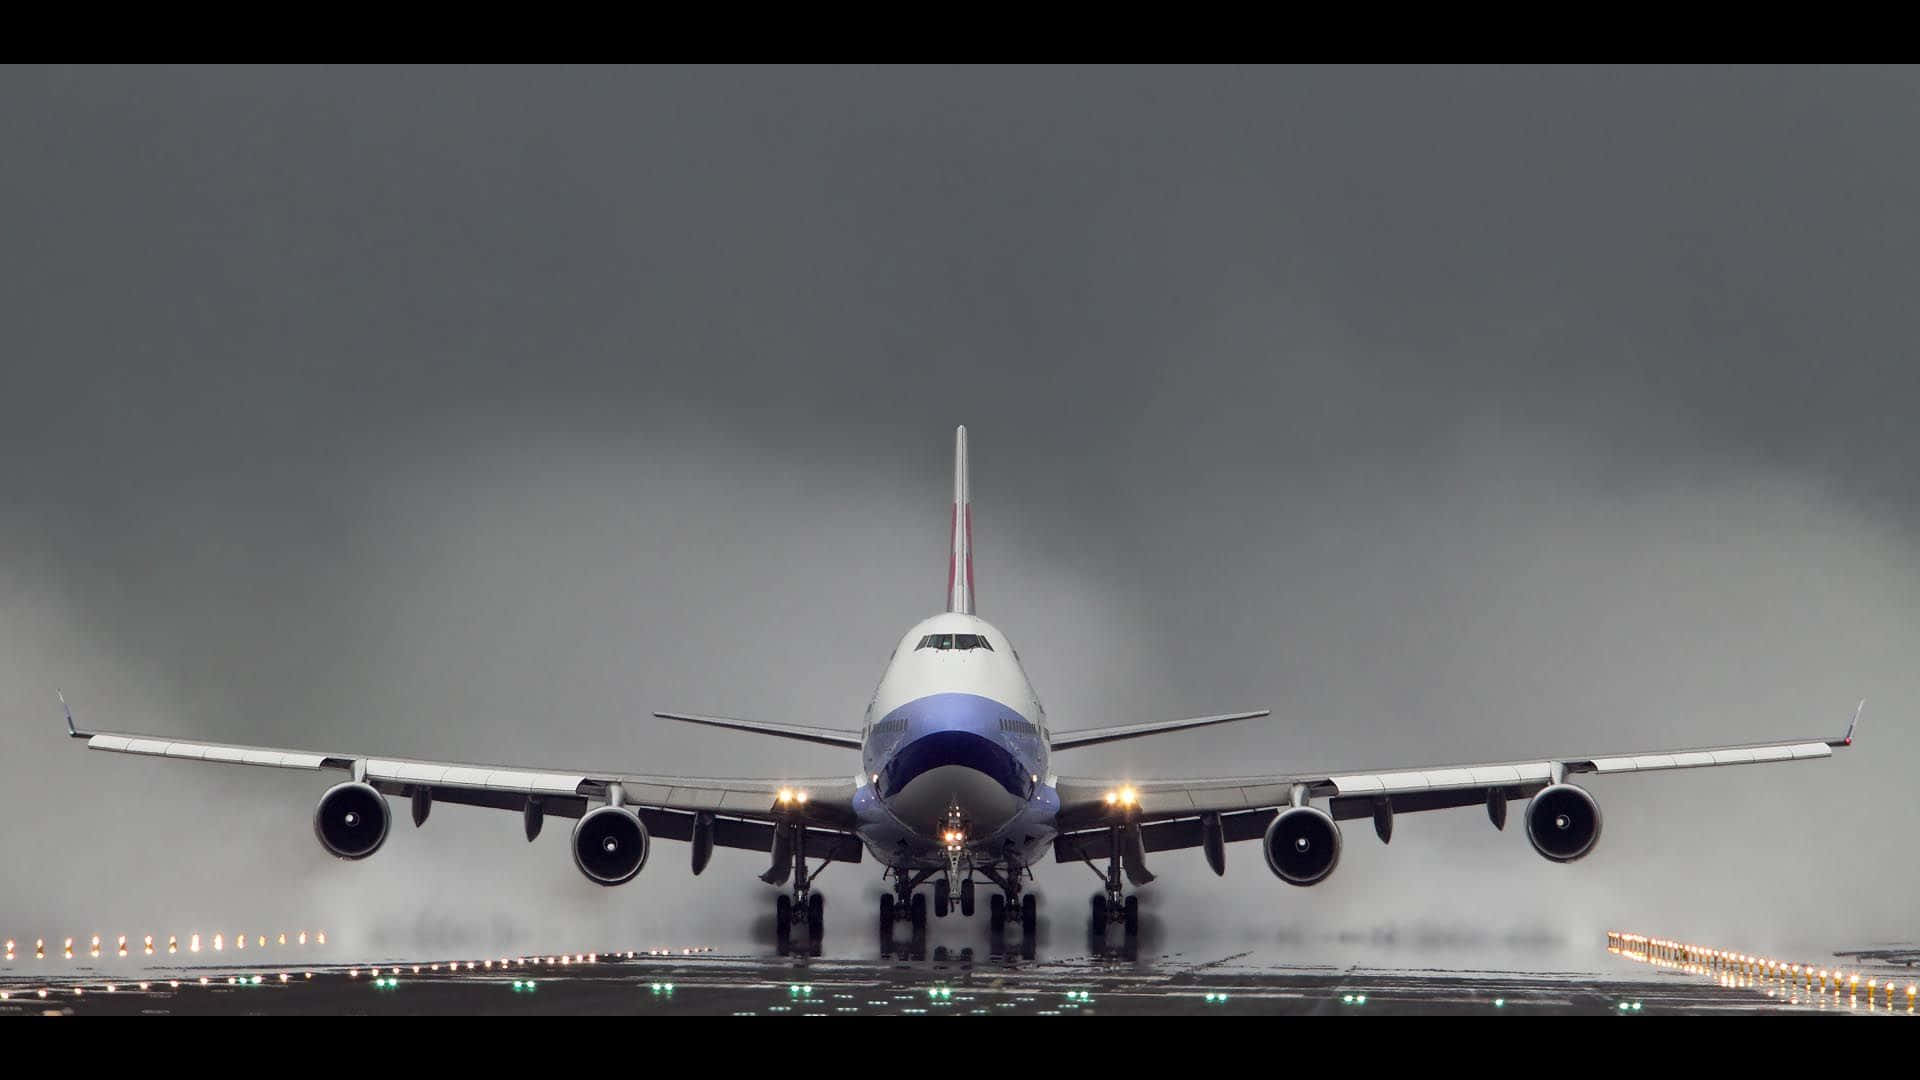 747flugzeug Beim Starten Wallpaper